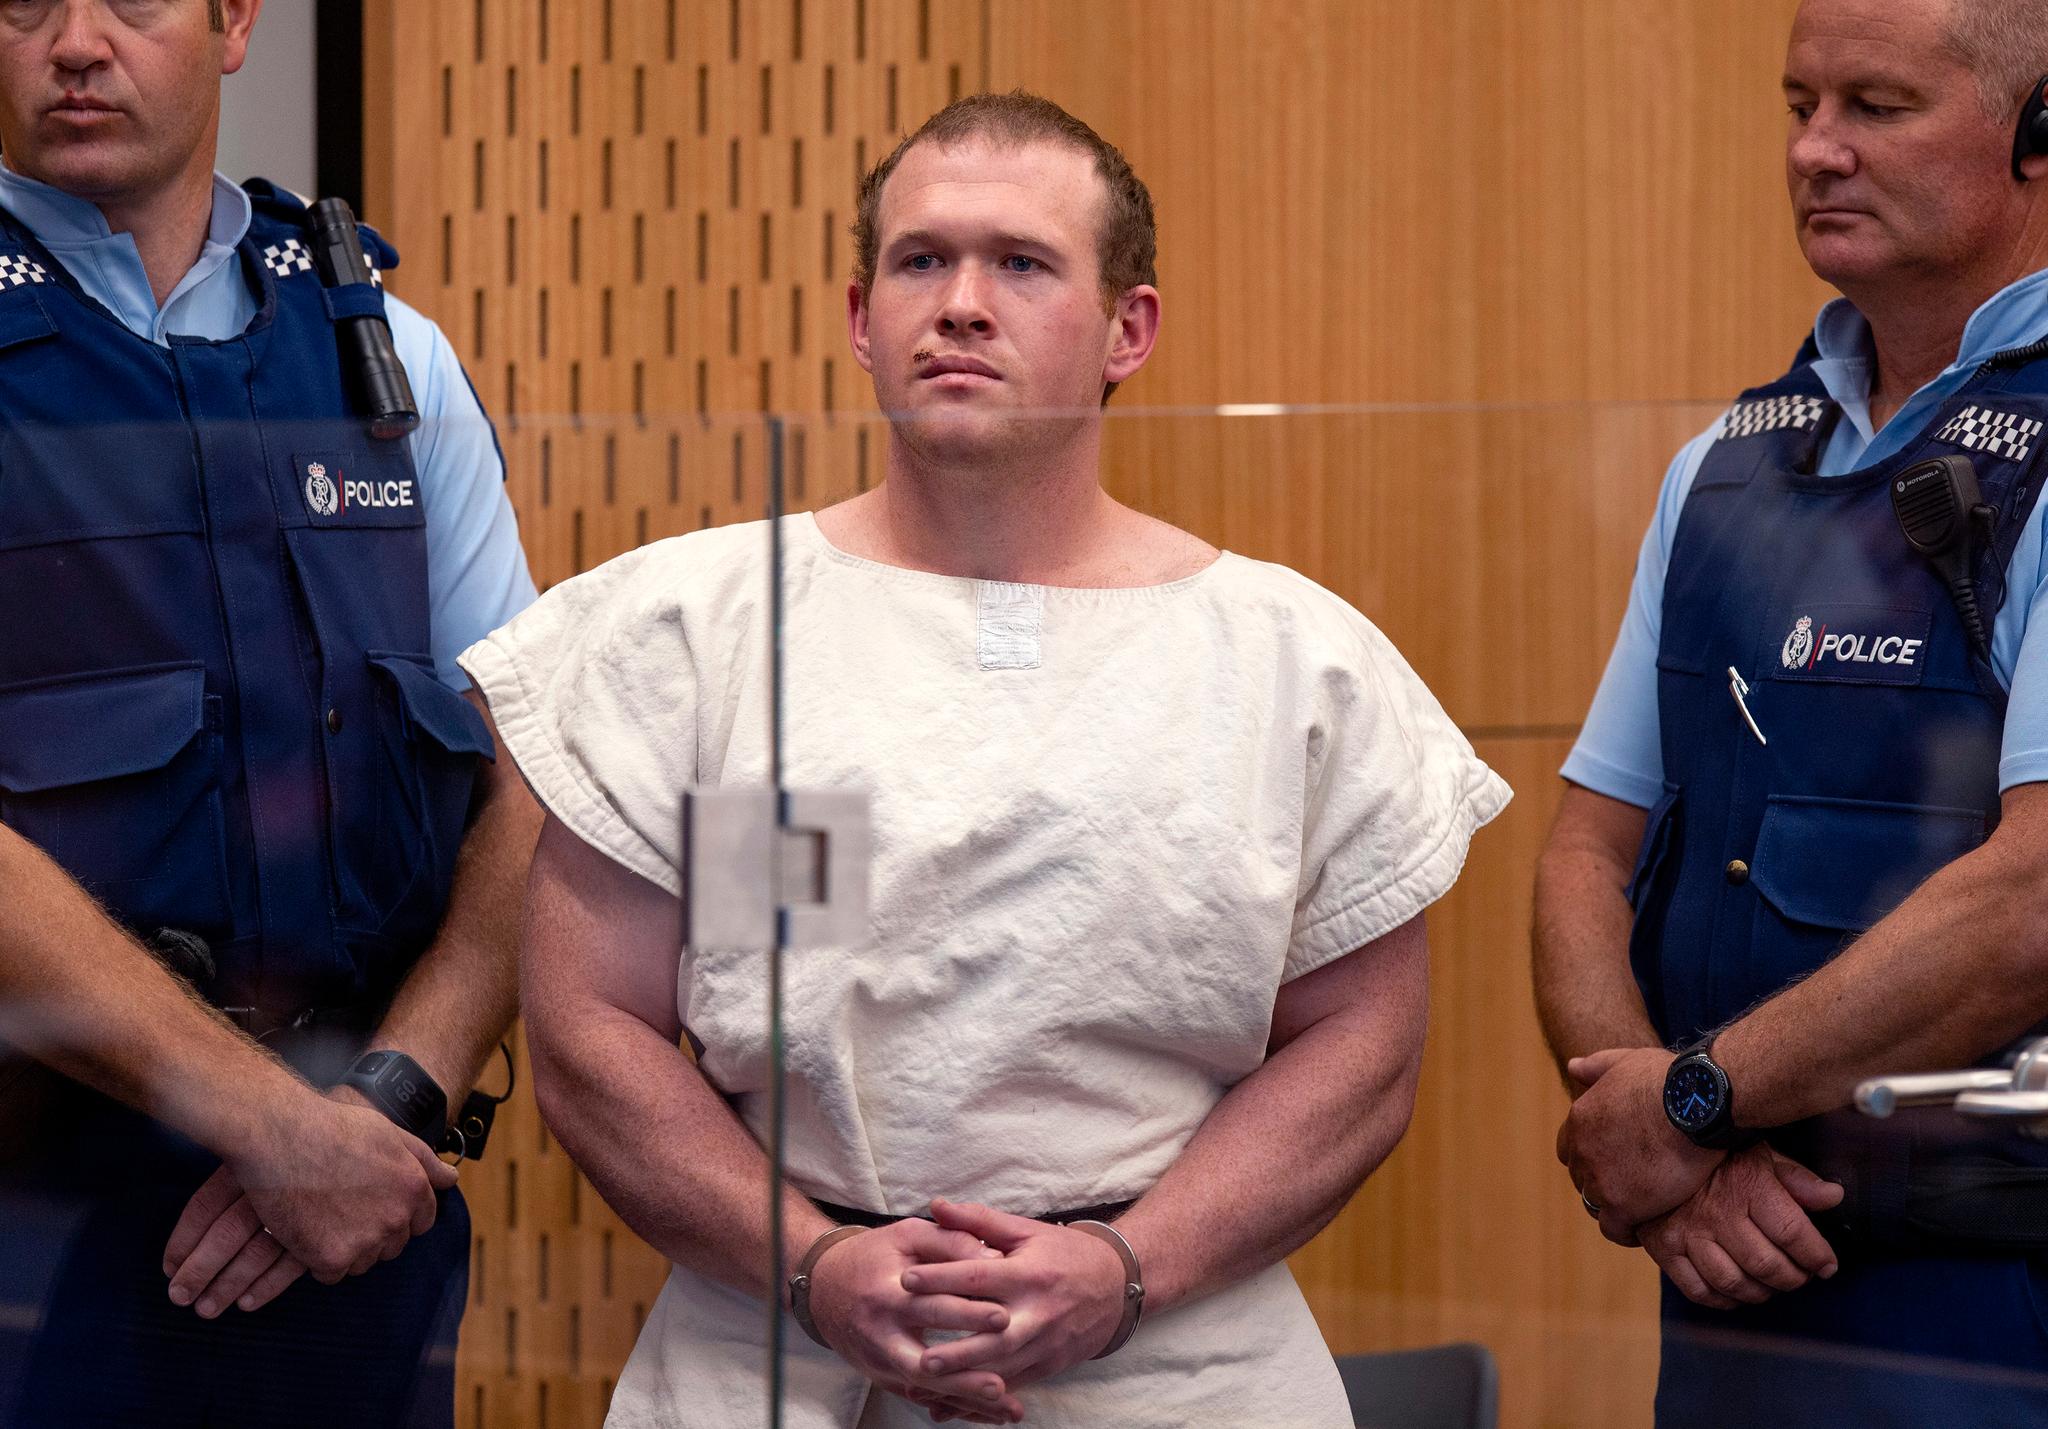 28 år gamle Brenton Tarrant er siktet for å ha drept 50 mennesker og skadet nesten like mange i Christchurch tidligere i år. Tarrant var en aktiv bruker av nettforumet 8chan.